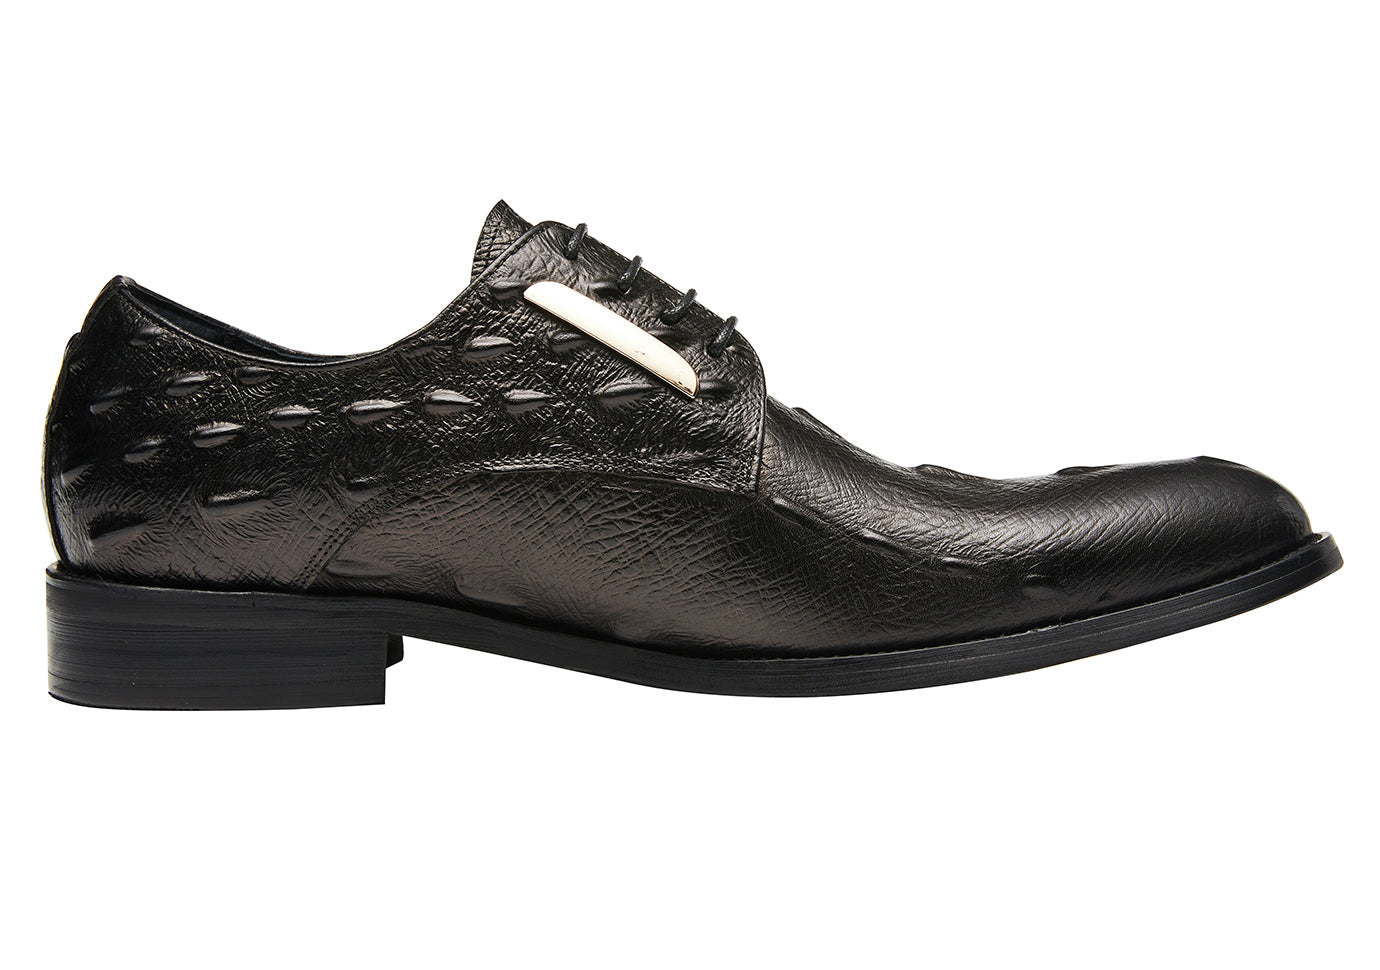 Men's Alligator Wingtip Derby Formal Shoes